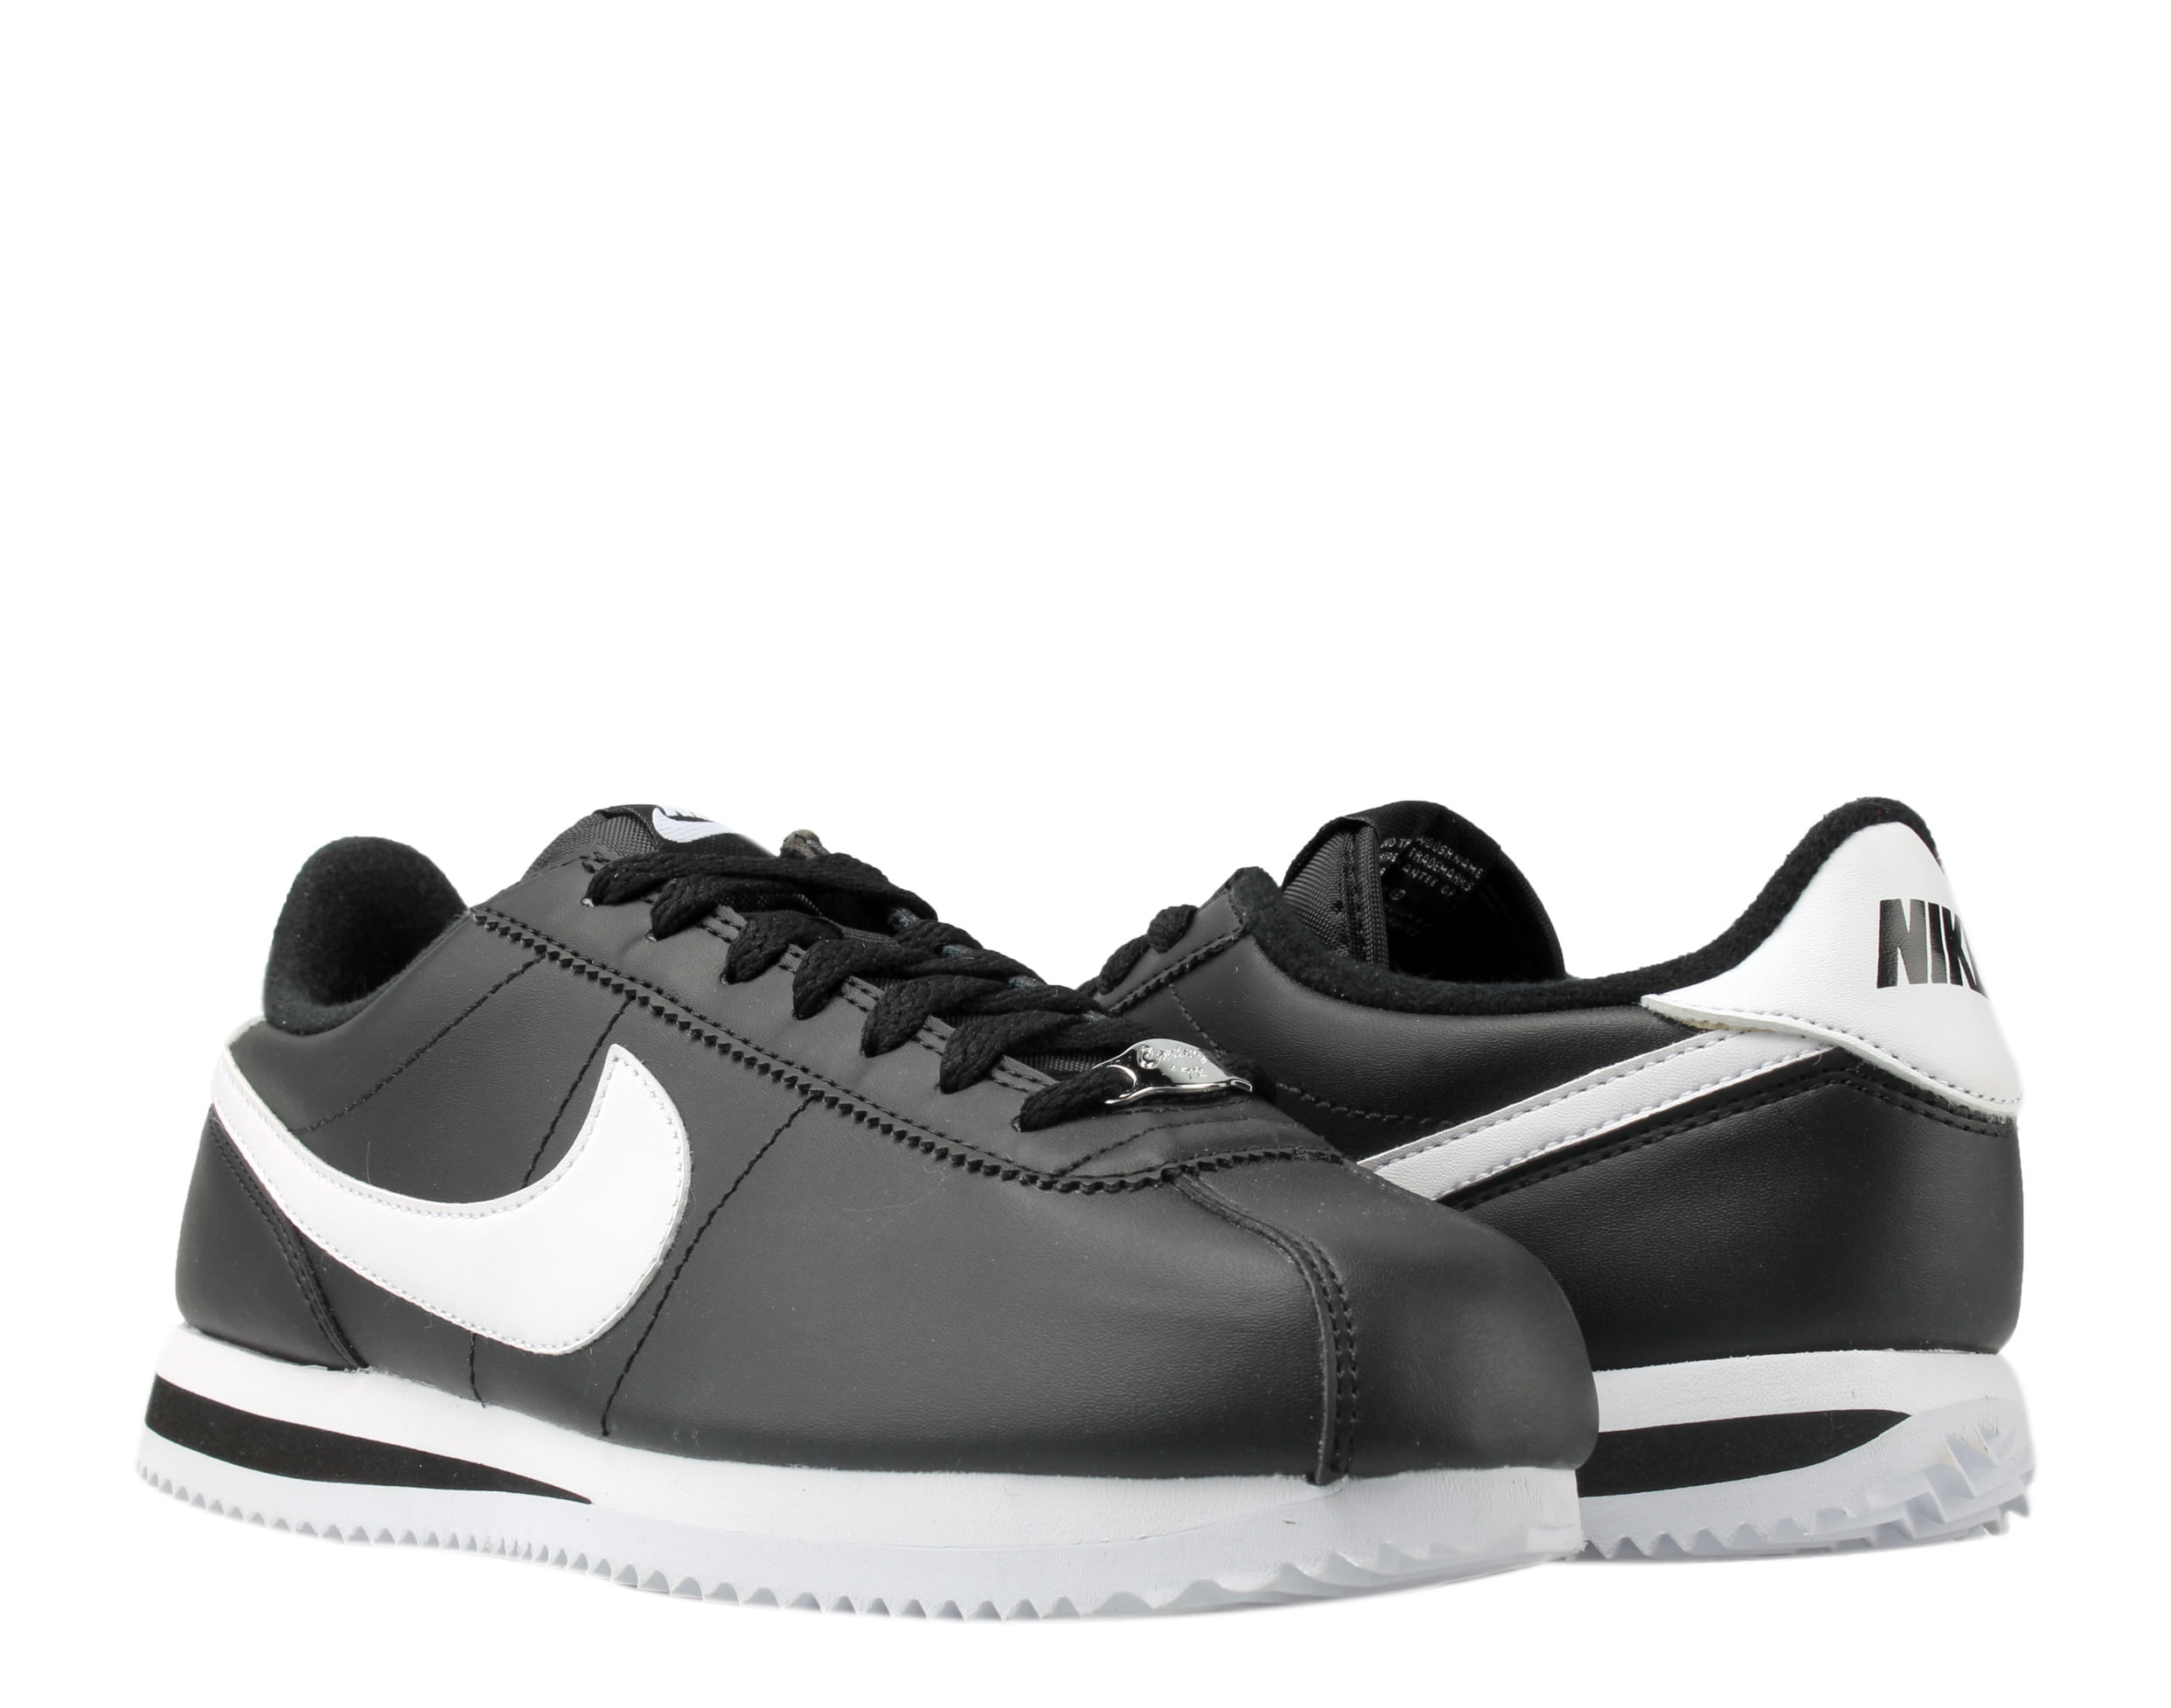 Nike Cortez Basic Running Shoes Size 11.5